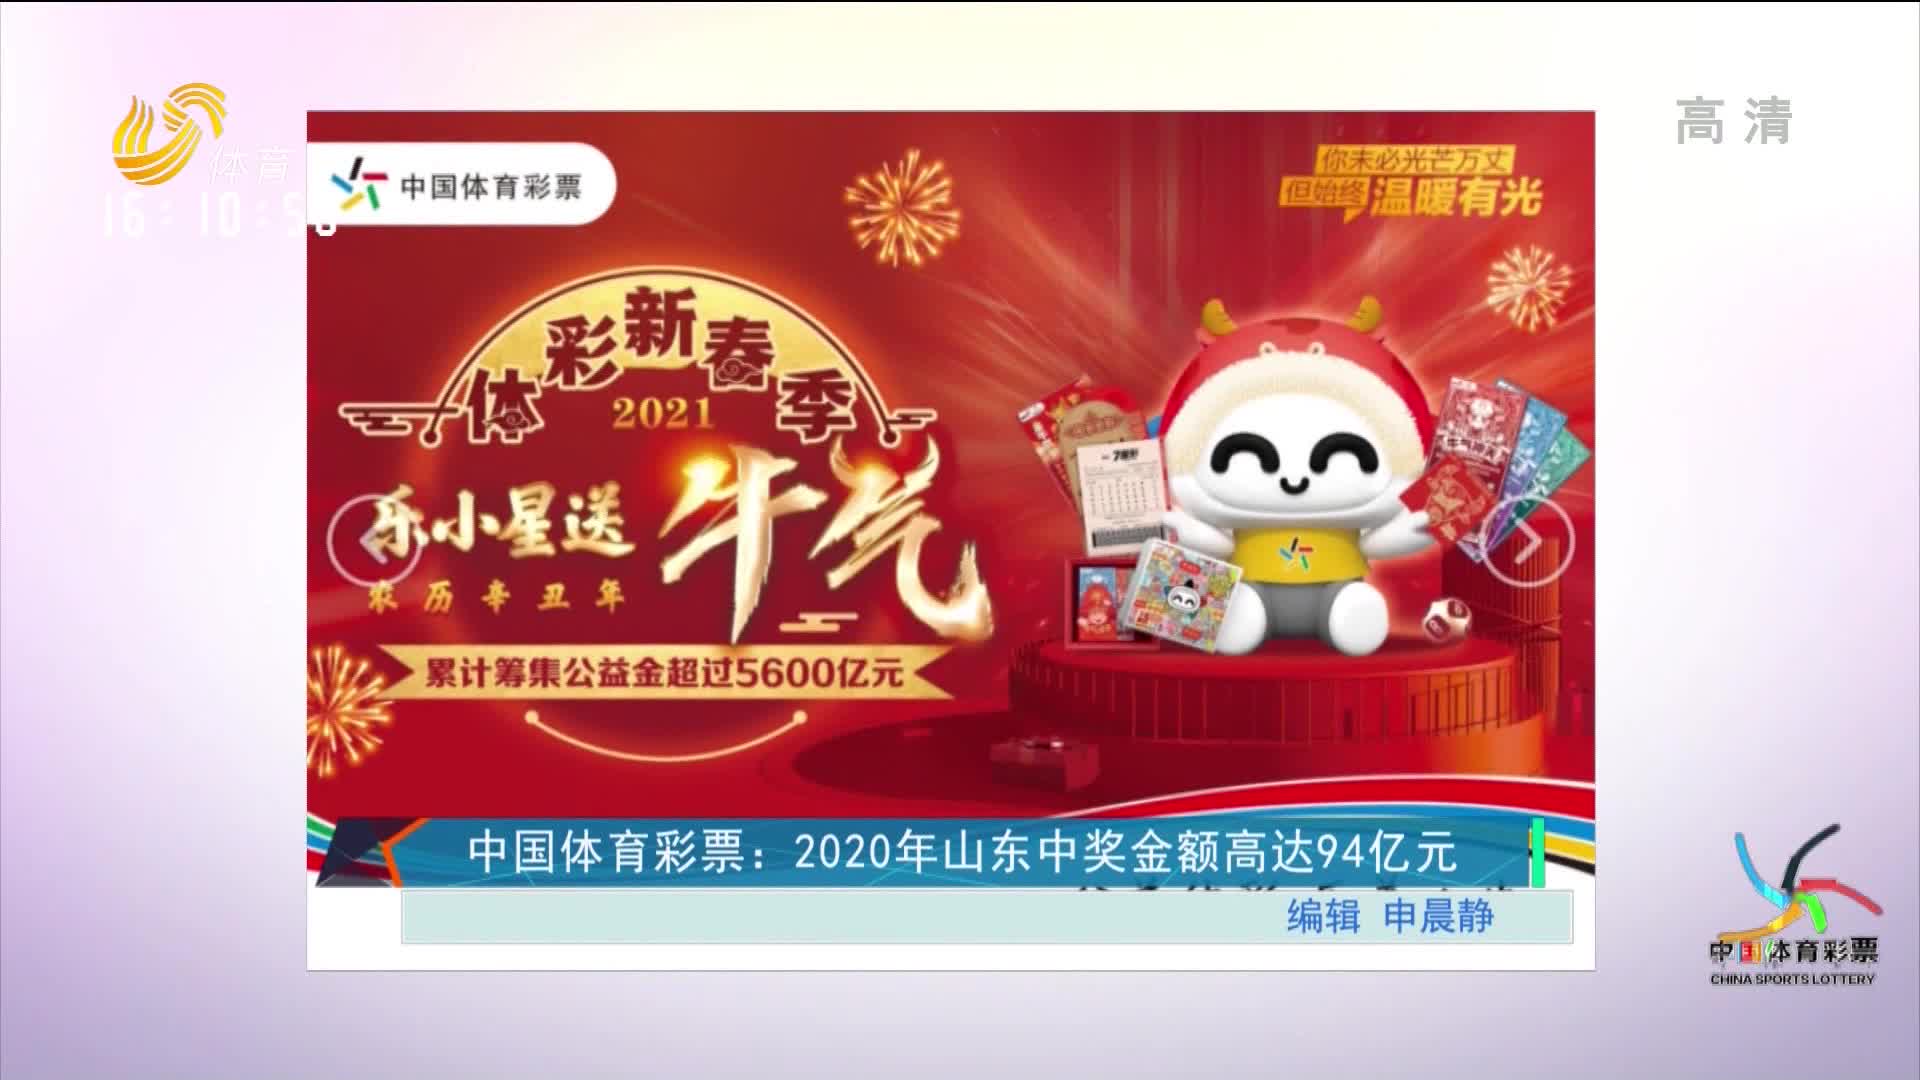 中国体育彩票：2020年山东中奖金额高达94亿元